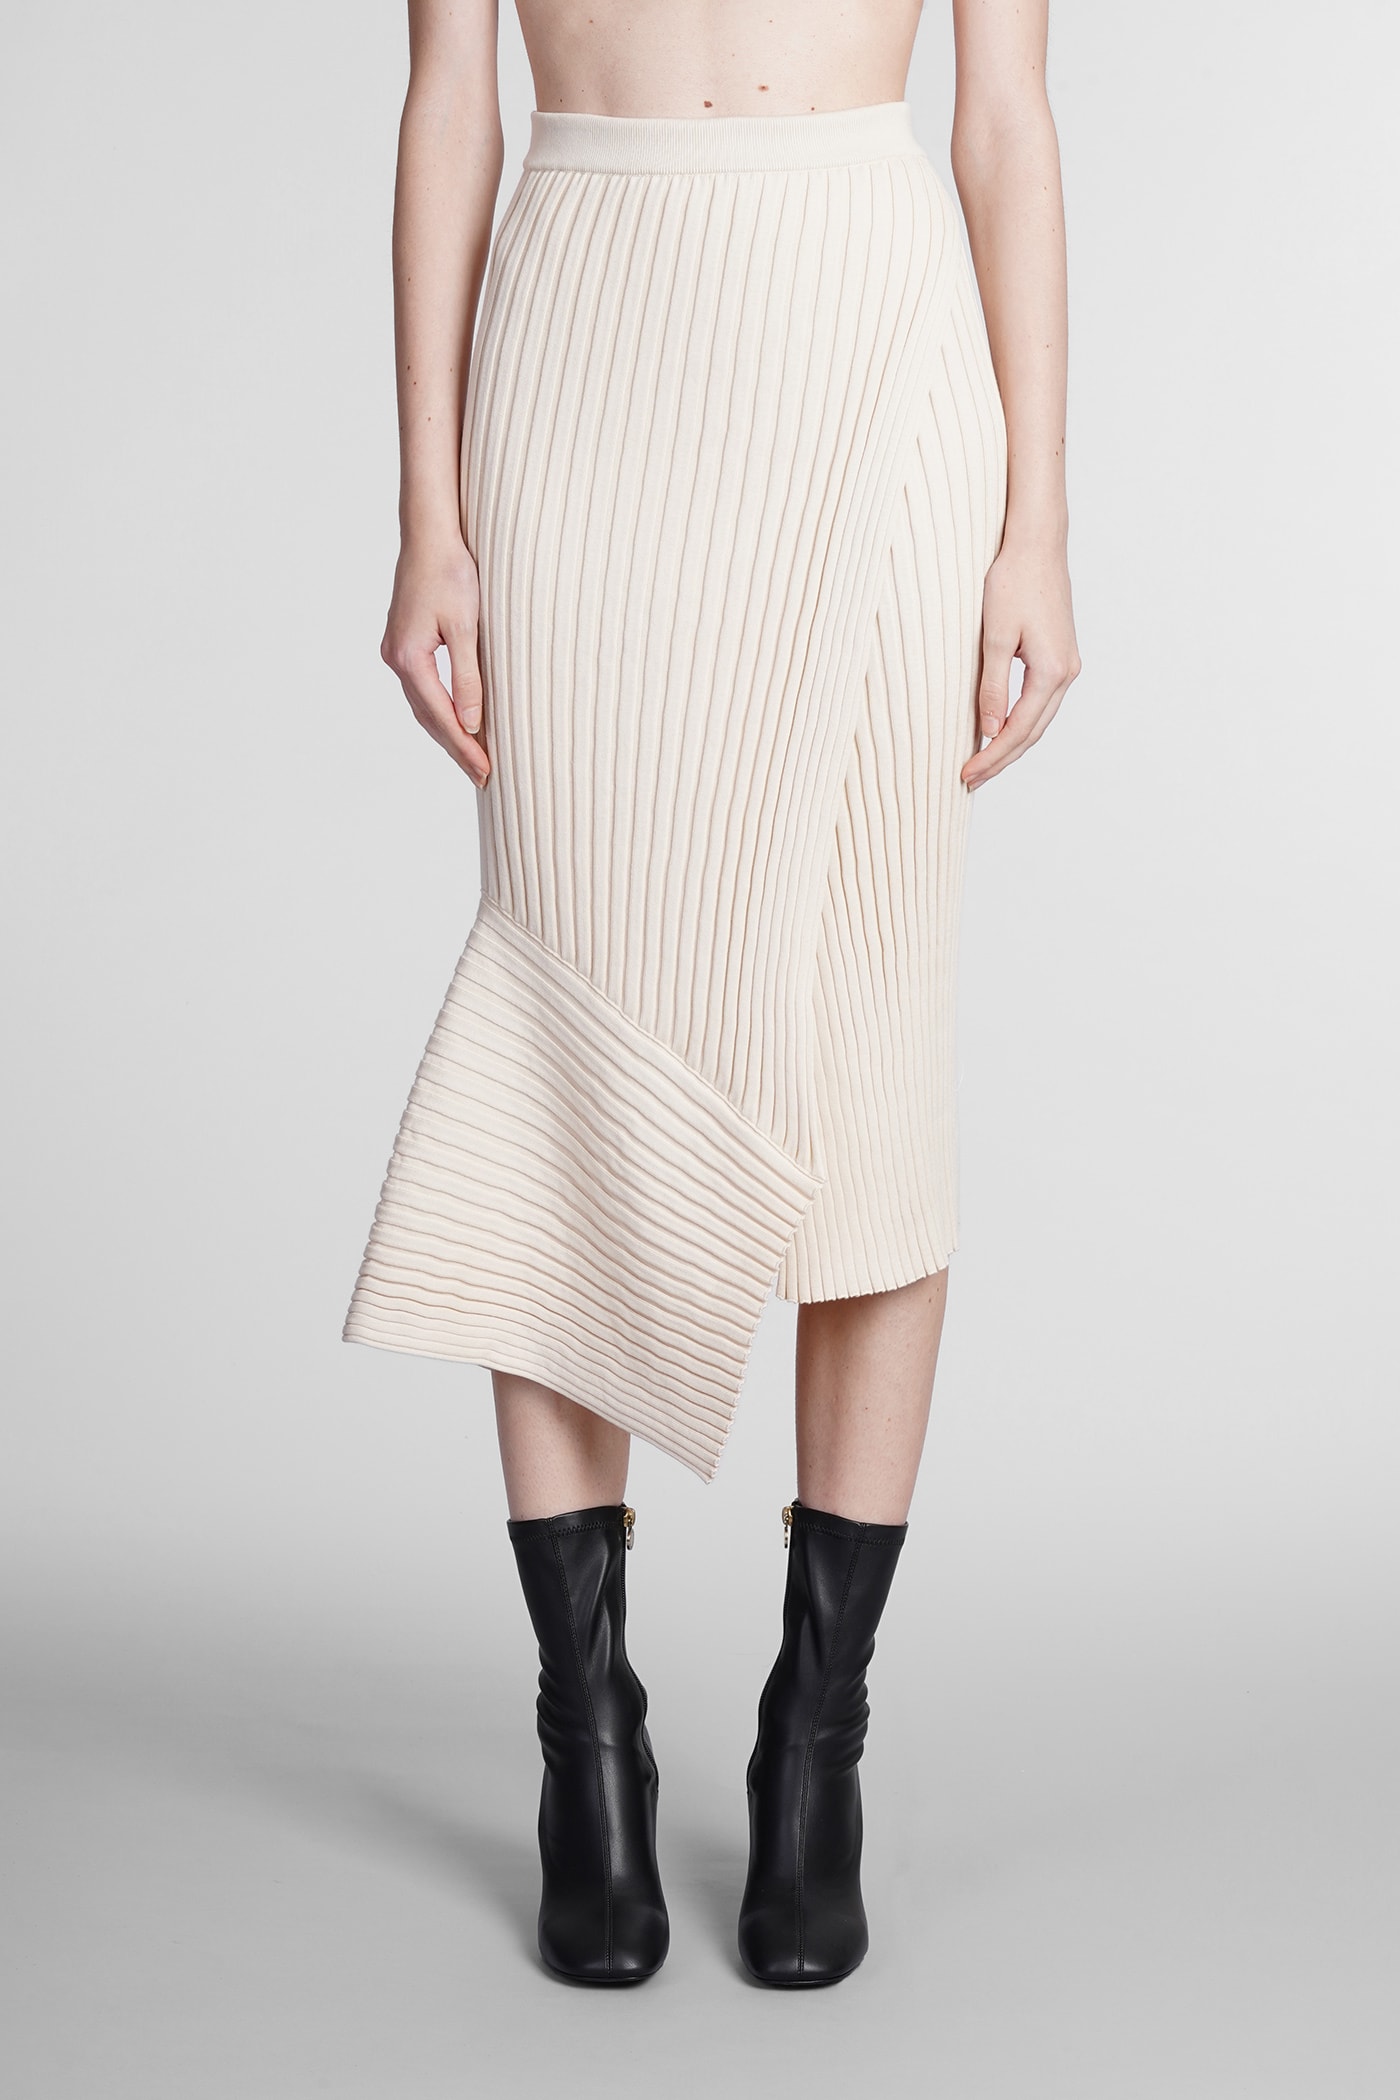 Stella McCartney Skirt In Beige Cotton